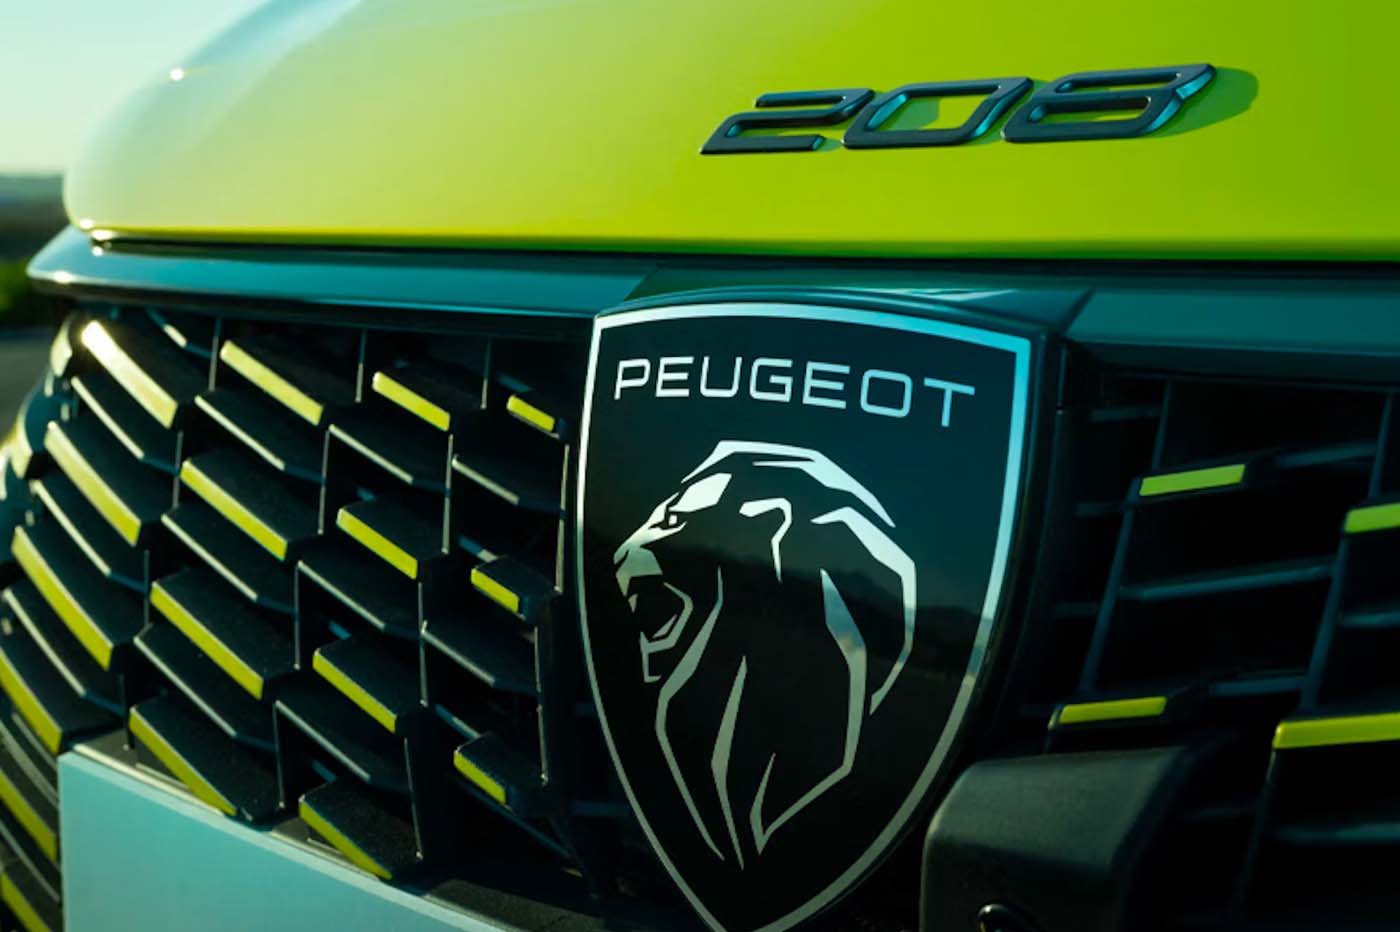 Peugeot e-208 2023